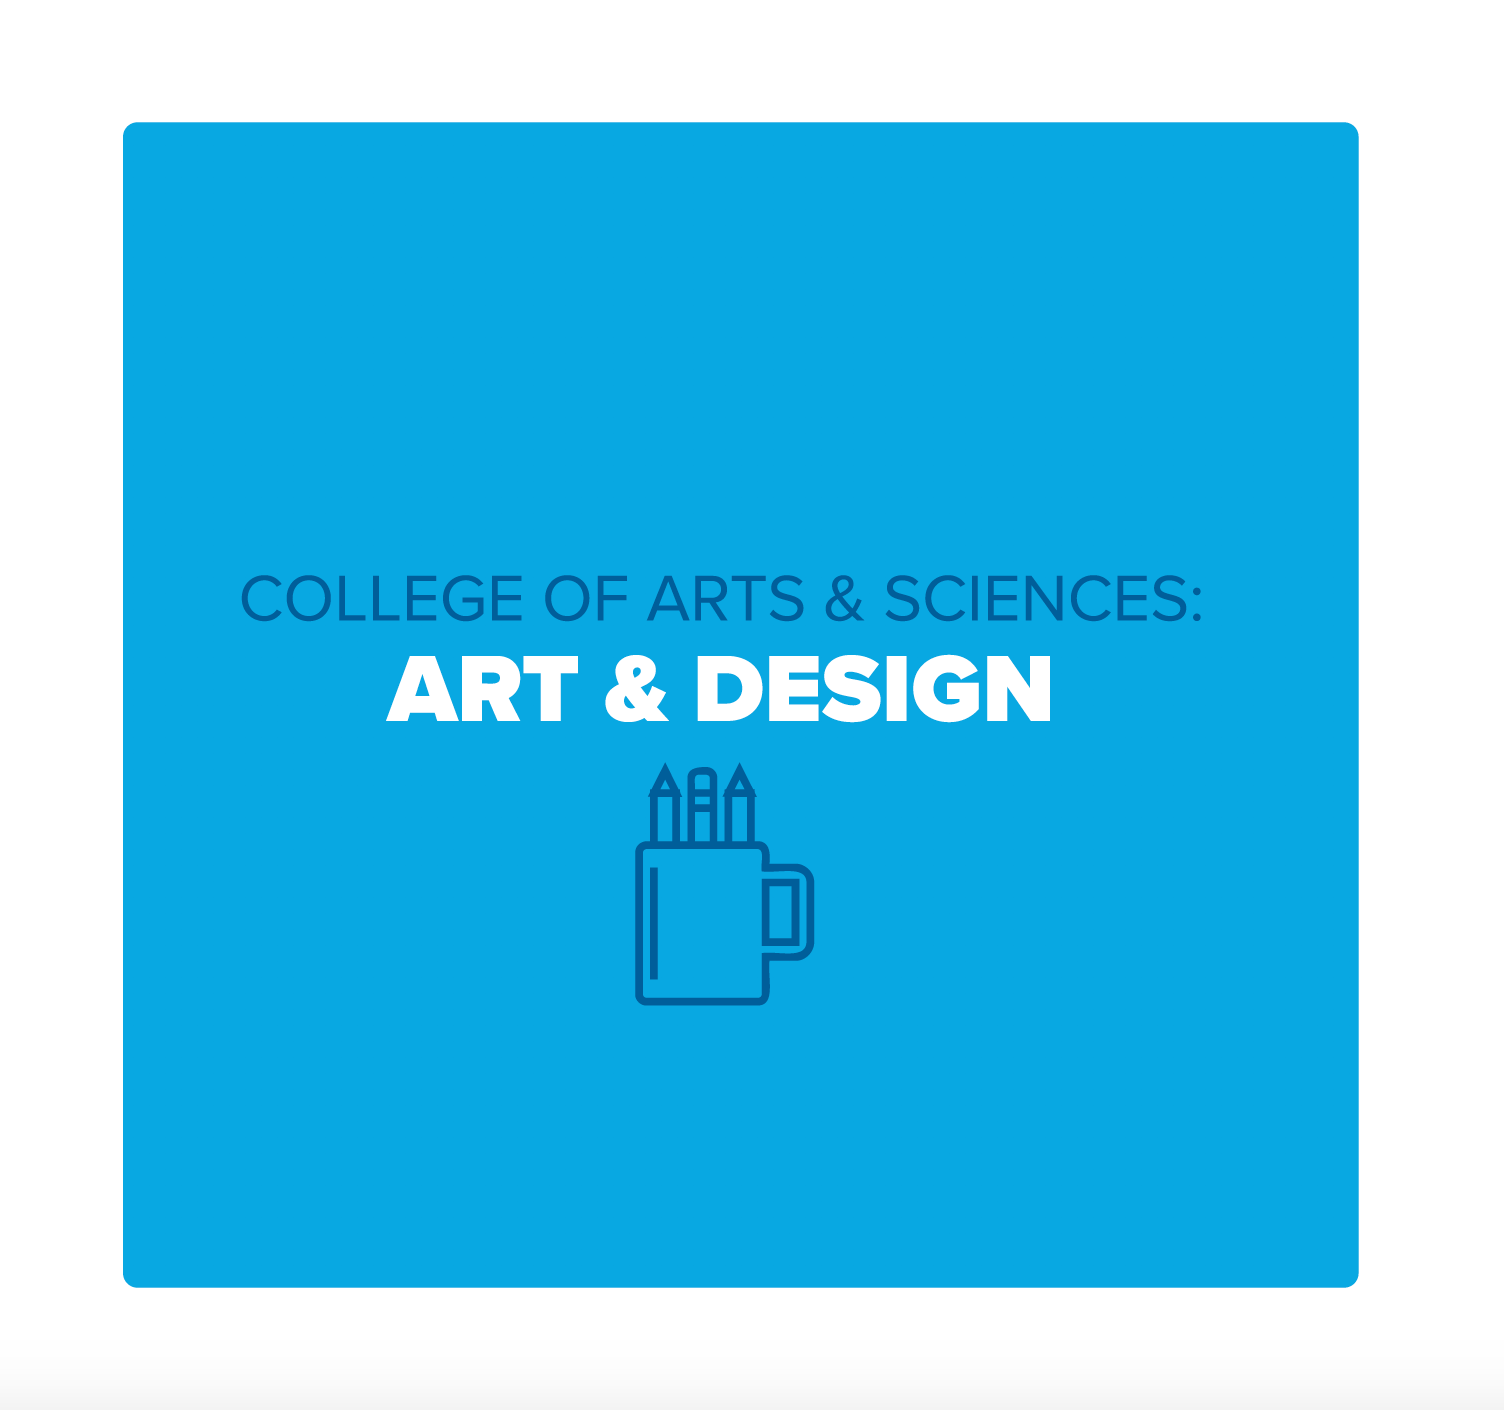 A&S: Art & Design